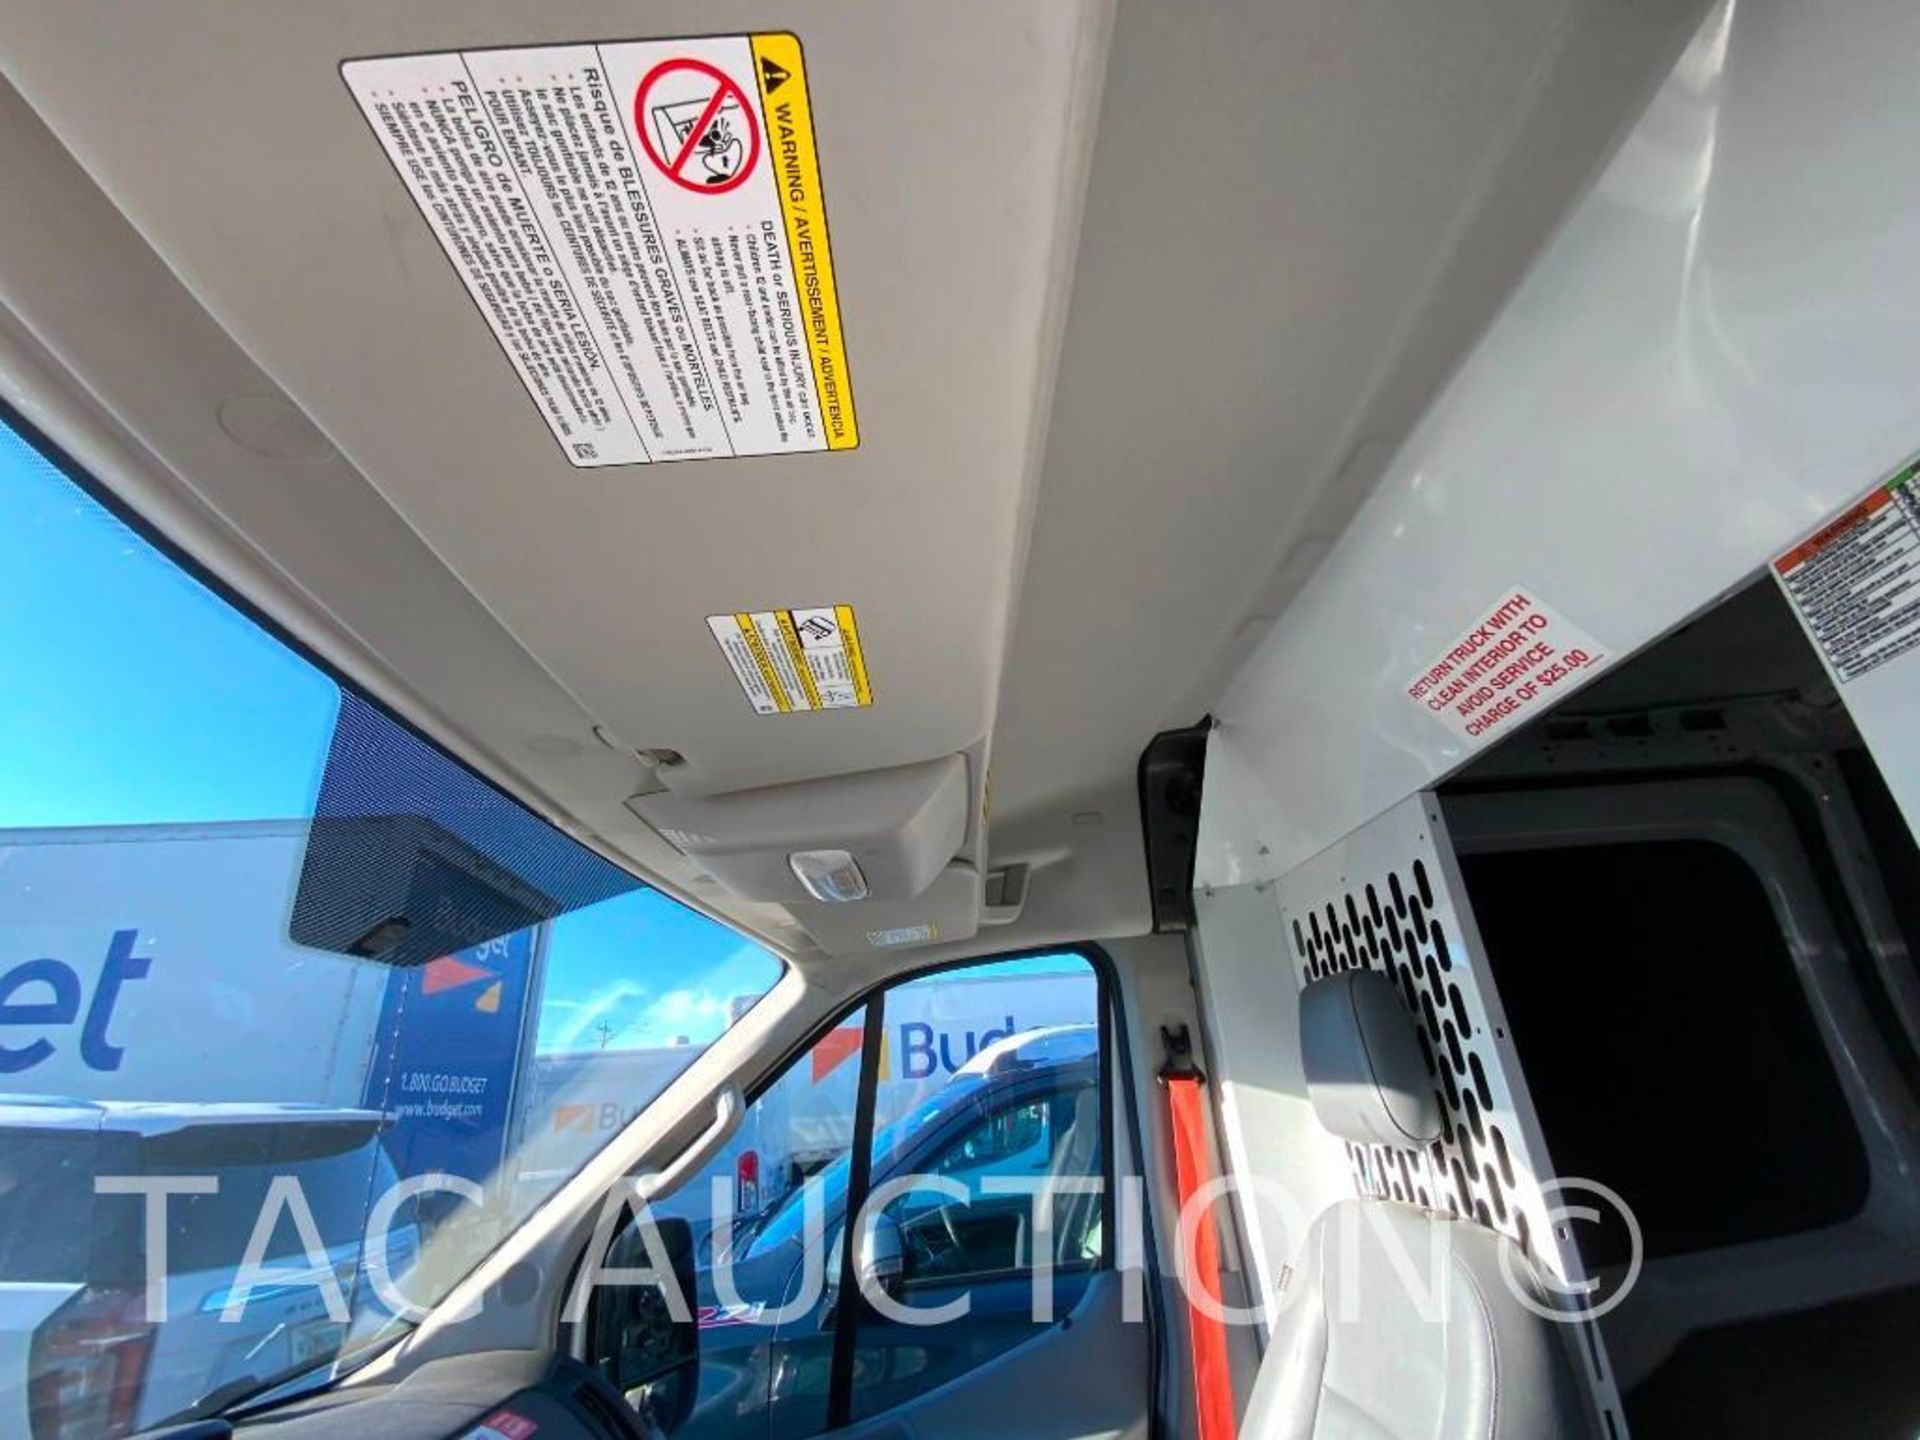 2019 Ford Transit 150 Cargo Van - Image 17 of 52